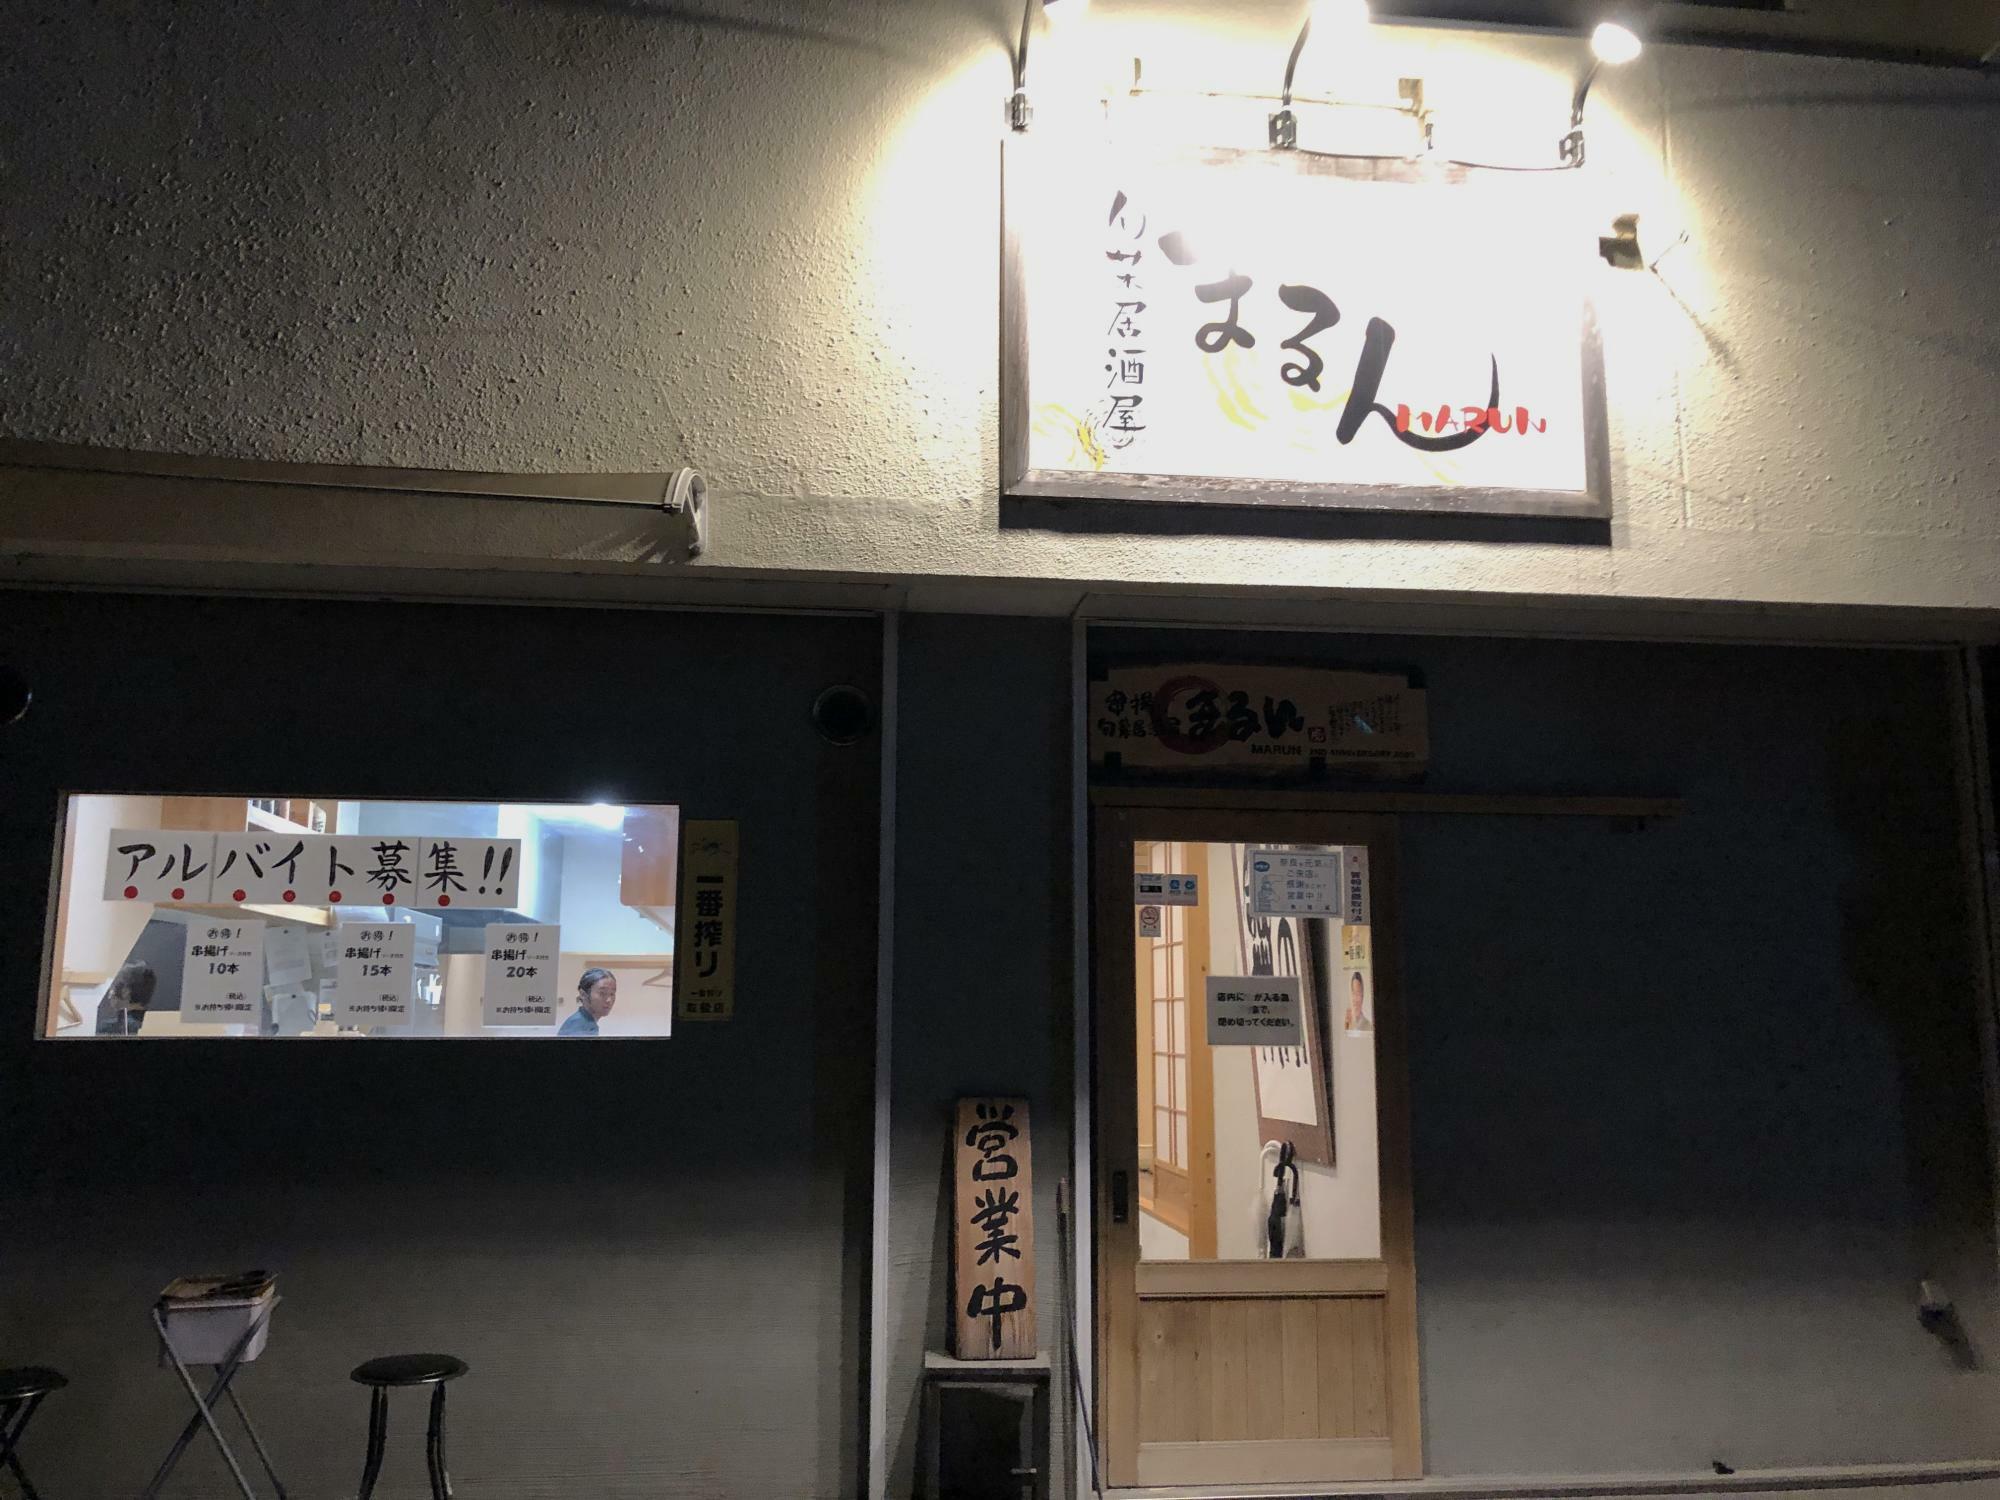 入口が和モダン風でかわいい。看板の文字は店主さんの奥さんが描かれたそうです